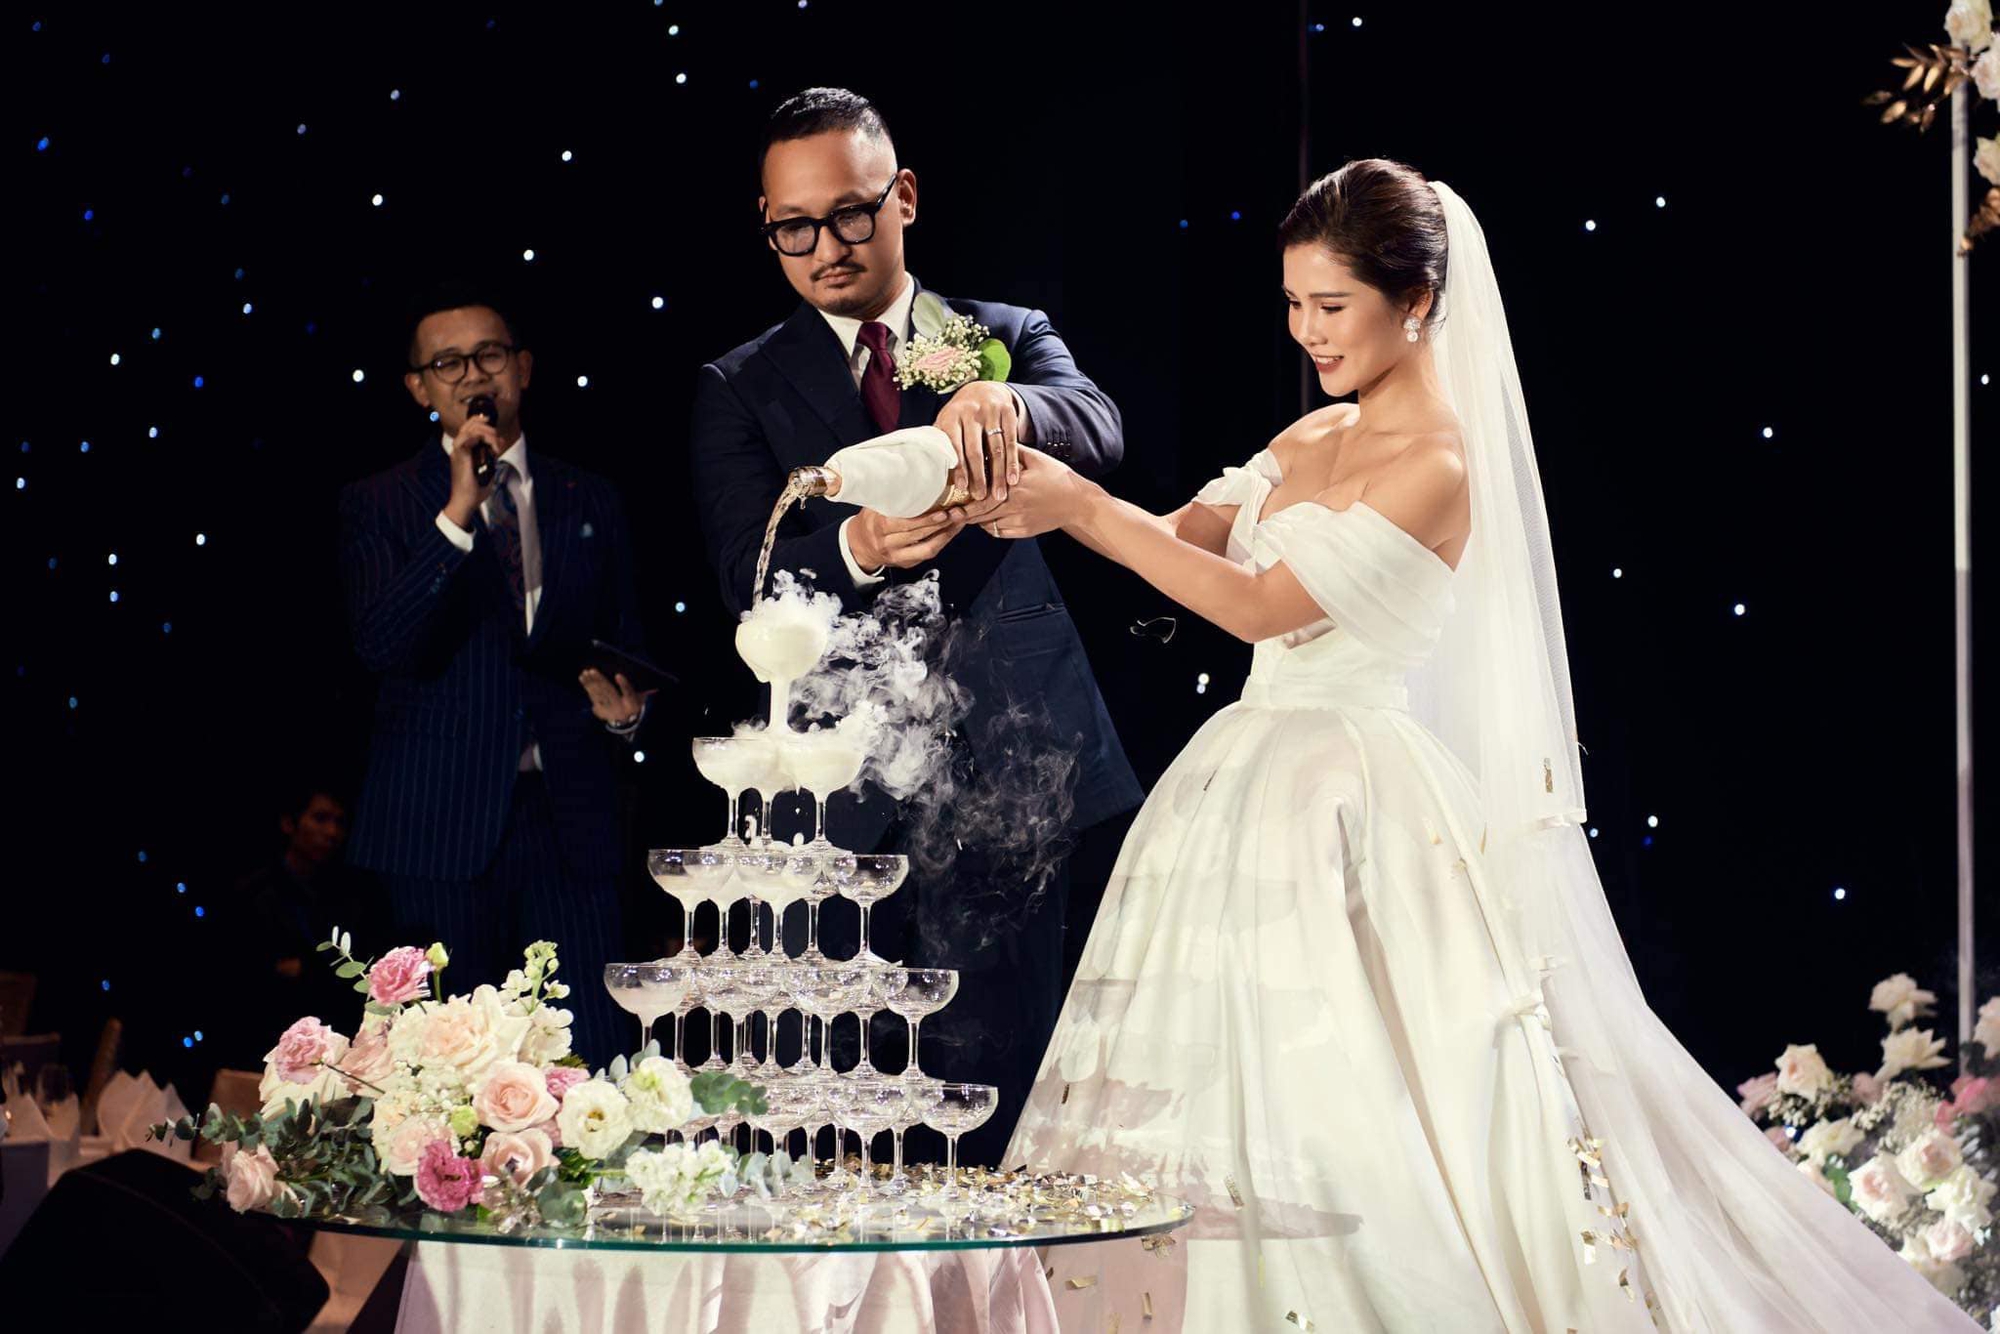 MC dẫn dắt 2 đám cưới của Đỗ Mỹ Linh và Phương Nga: 2 cái tên thực lực ở VTV, nghe tên đã thấy uy tín - Ảnh 5.